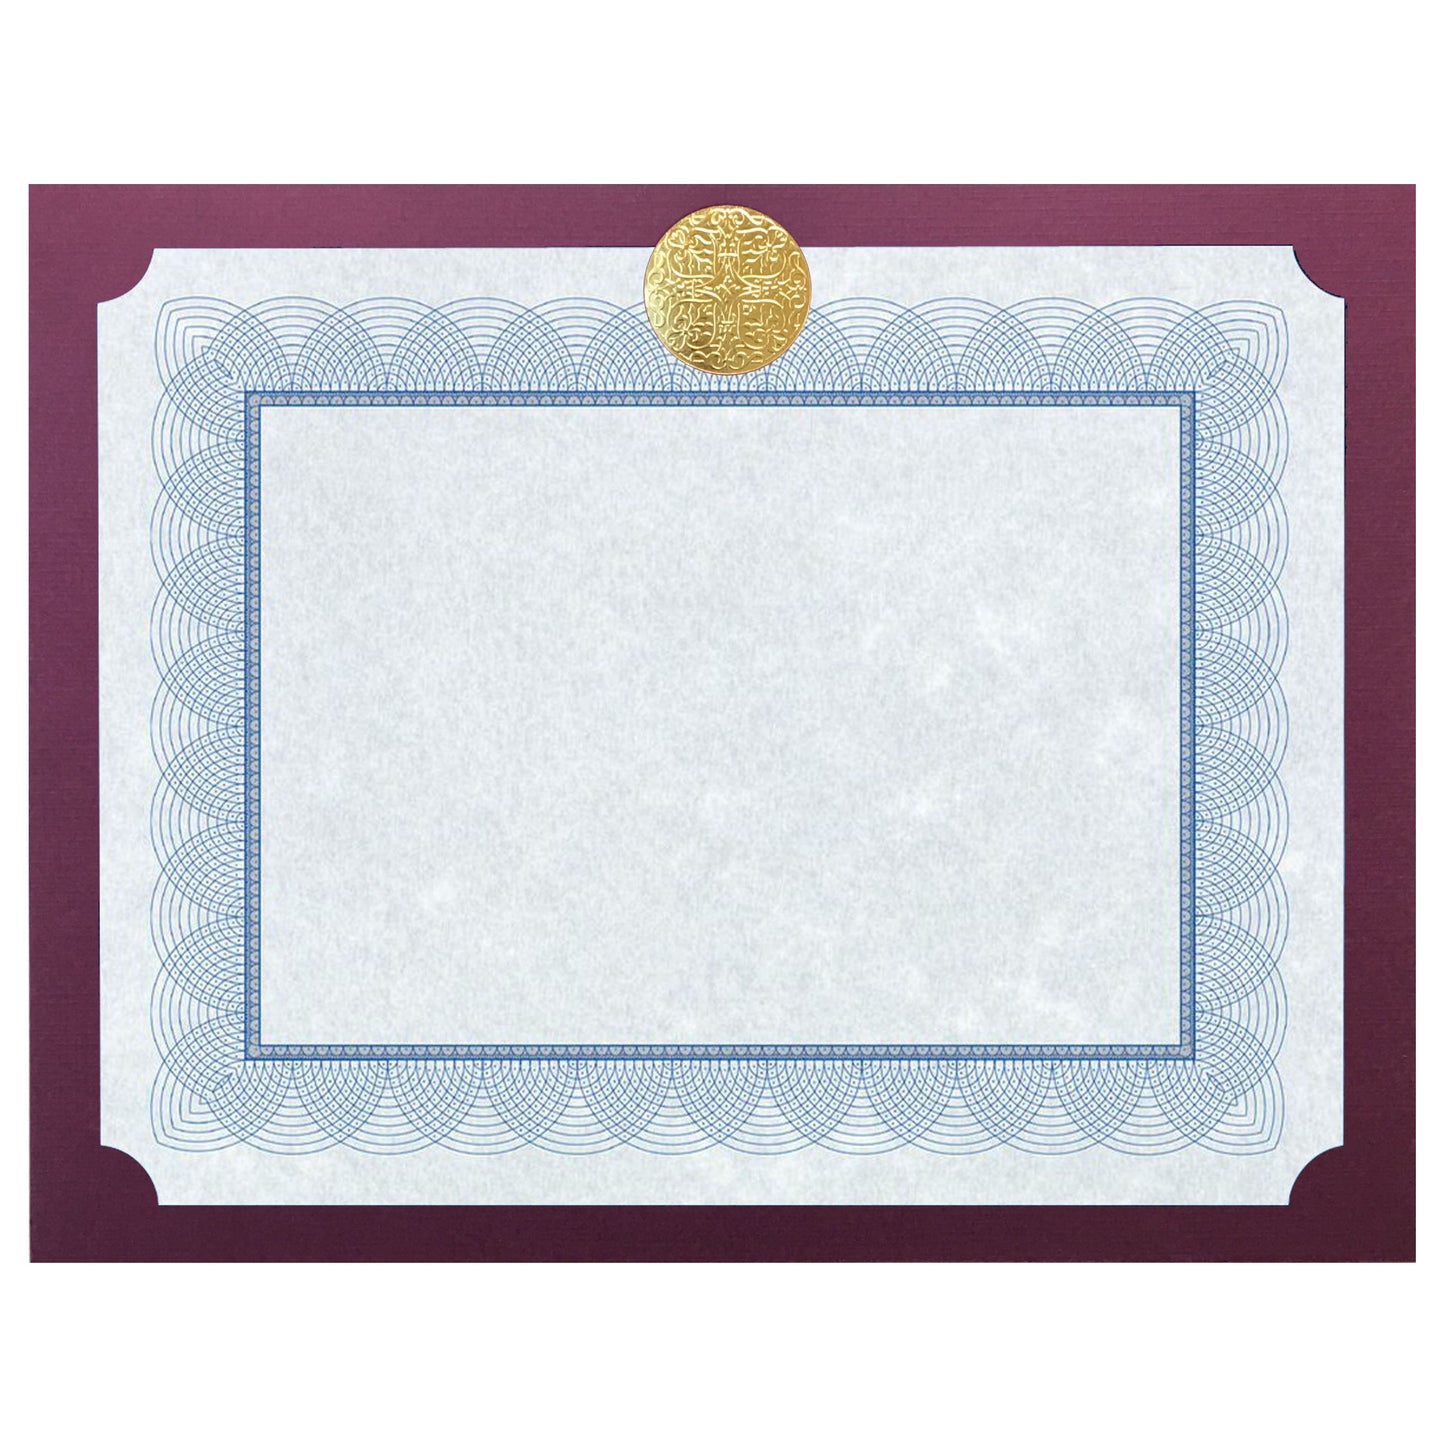 St. James® Elite™ Medallion Presentation Cards/Certificate Holder, Burgundy with Gold Medallion, Pack of 25